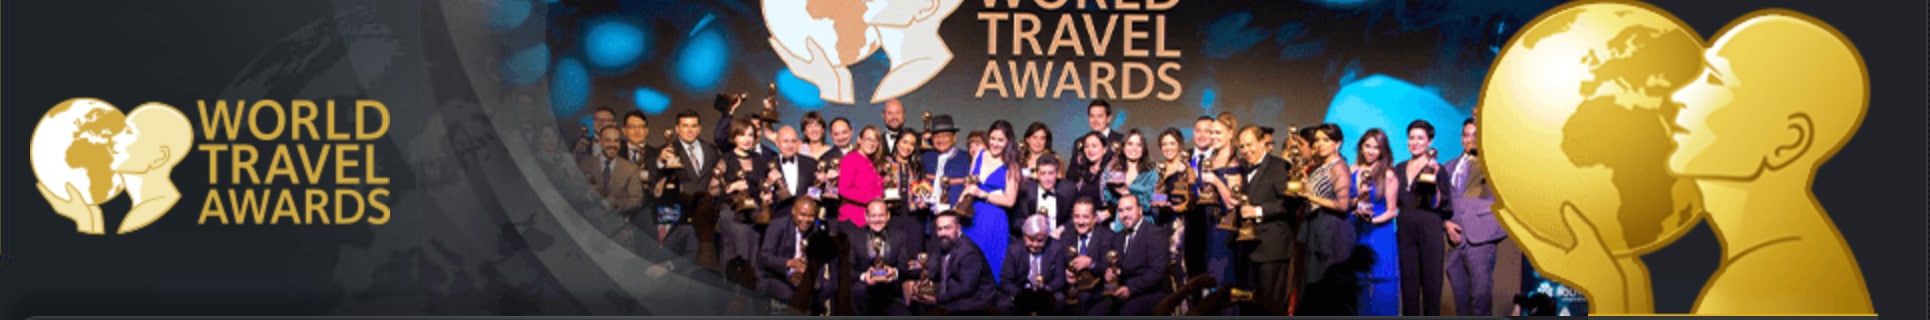 world travel awards 2020